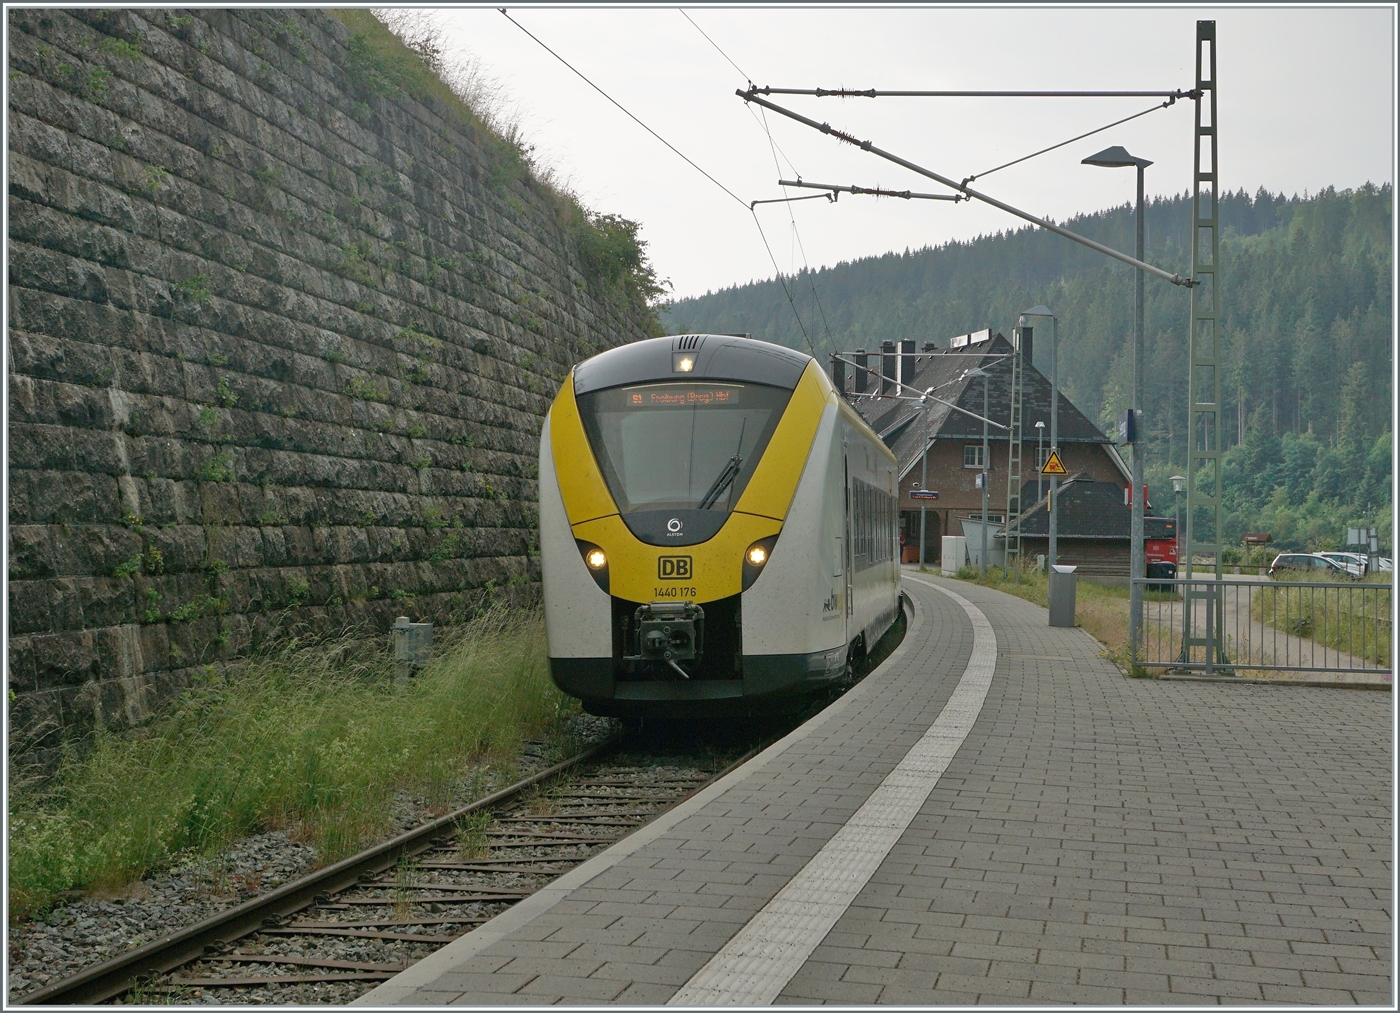 Der DB 1440 176 Coradia Continental 2  Grinsekatze  verlässt Seebrugg mit dme Ziel Freiburg im Breisgau.

21. Juni 2023